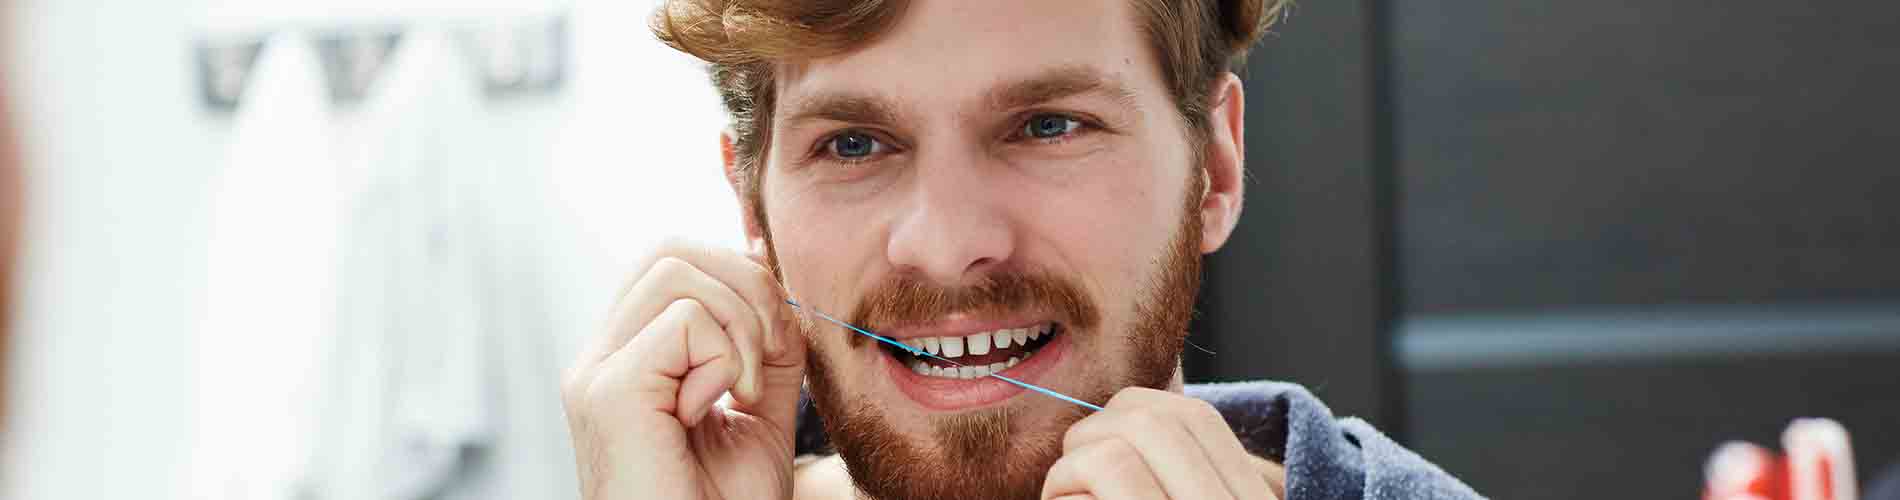 El hilo dental ¿por qué hay que usarlo?